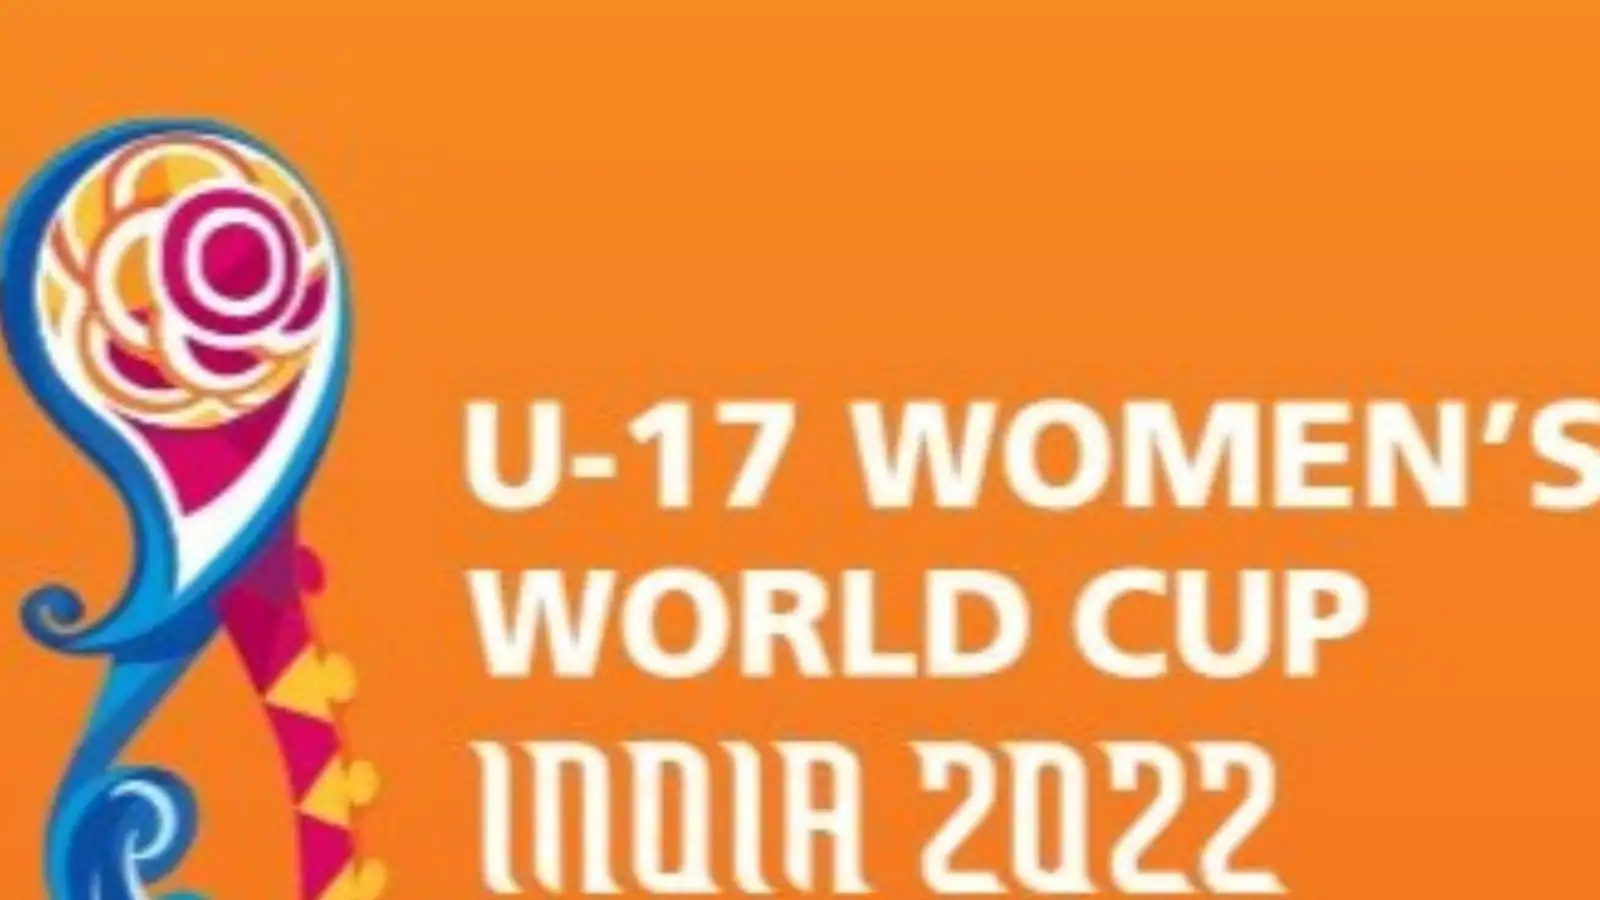 SC ने केंद्र से अंडर-17 महिला विश्व कप के आयोजन में सक्रिय भूमिका निभाने को कहा